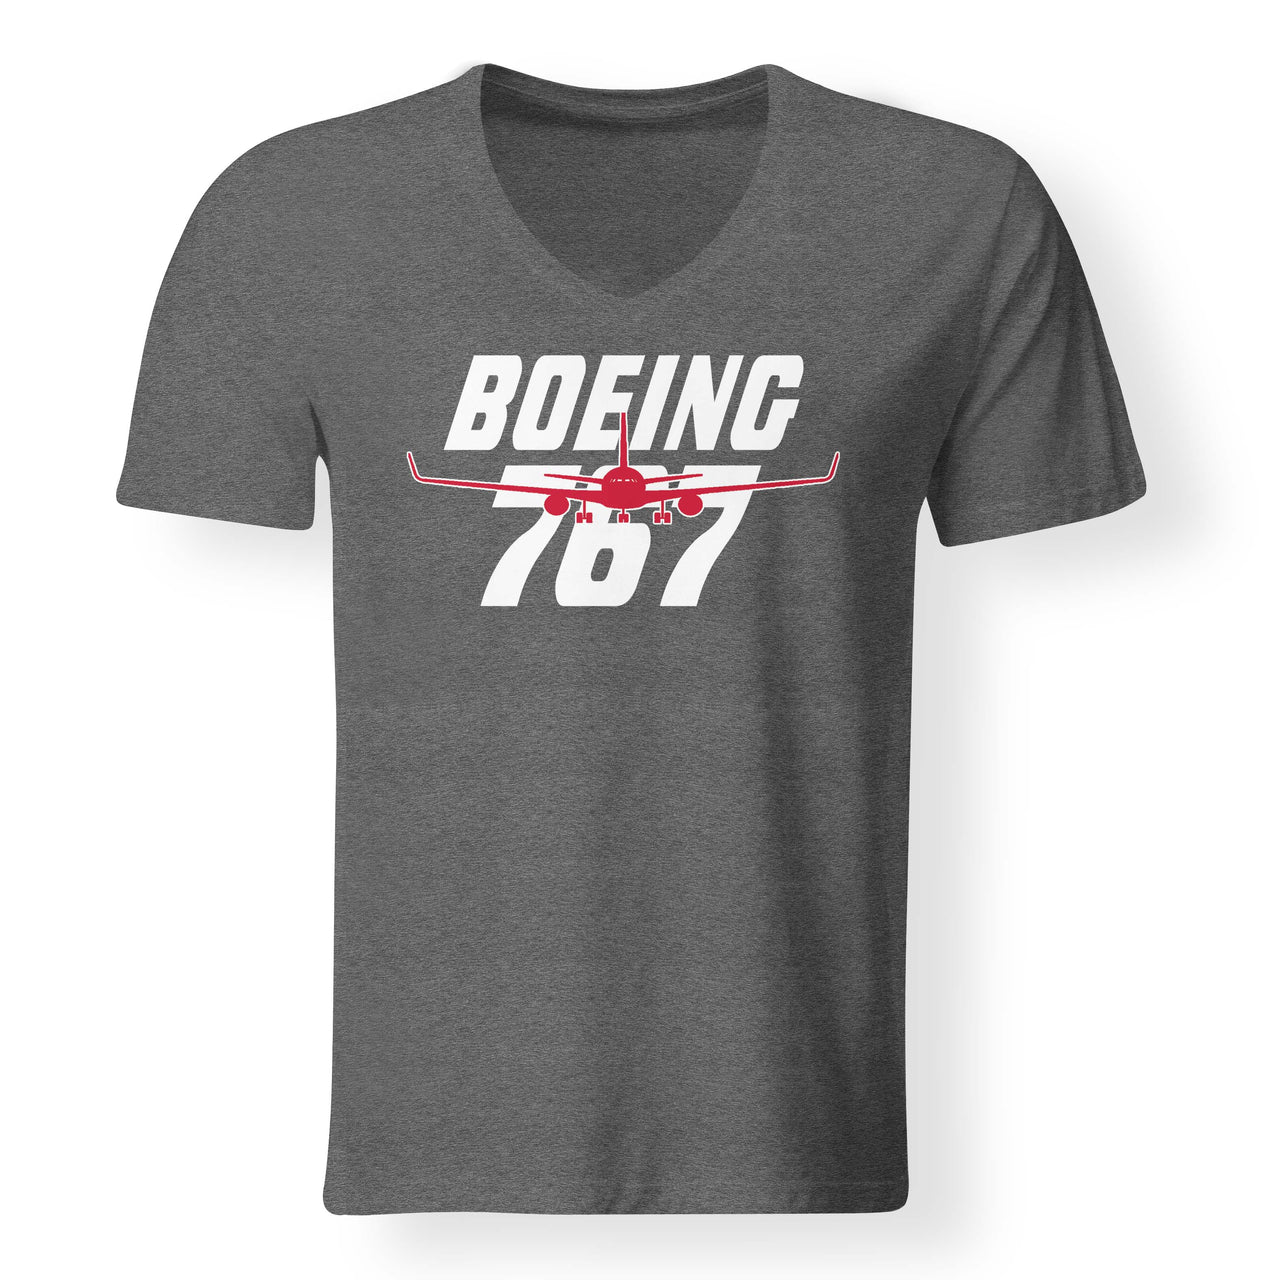 Amazing Boeing 767 Designed V-Neck T-Shirts